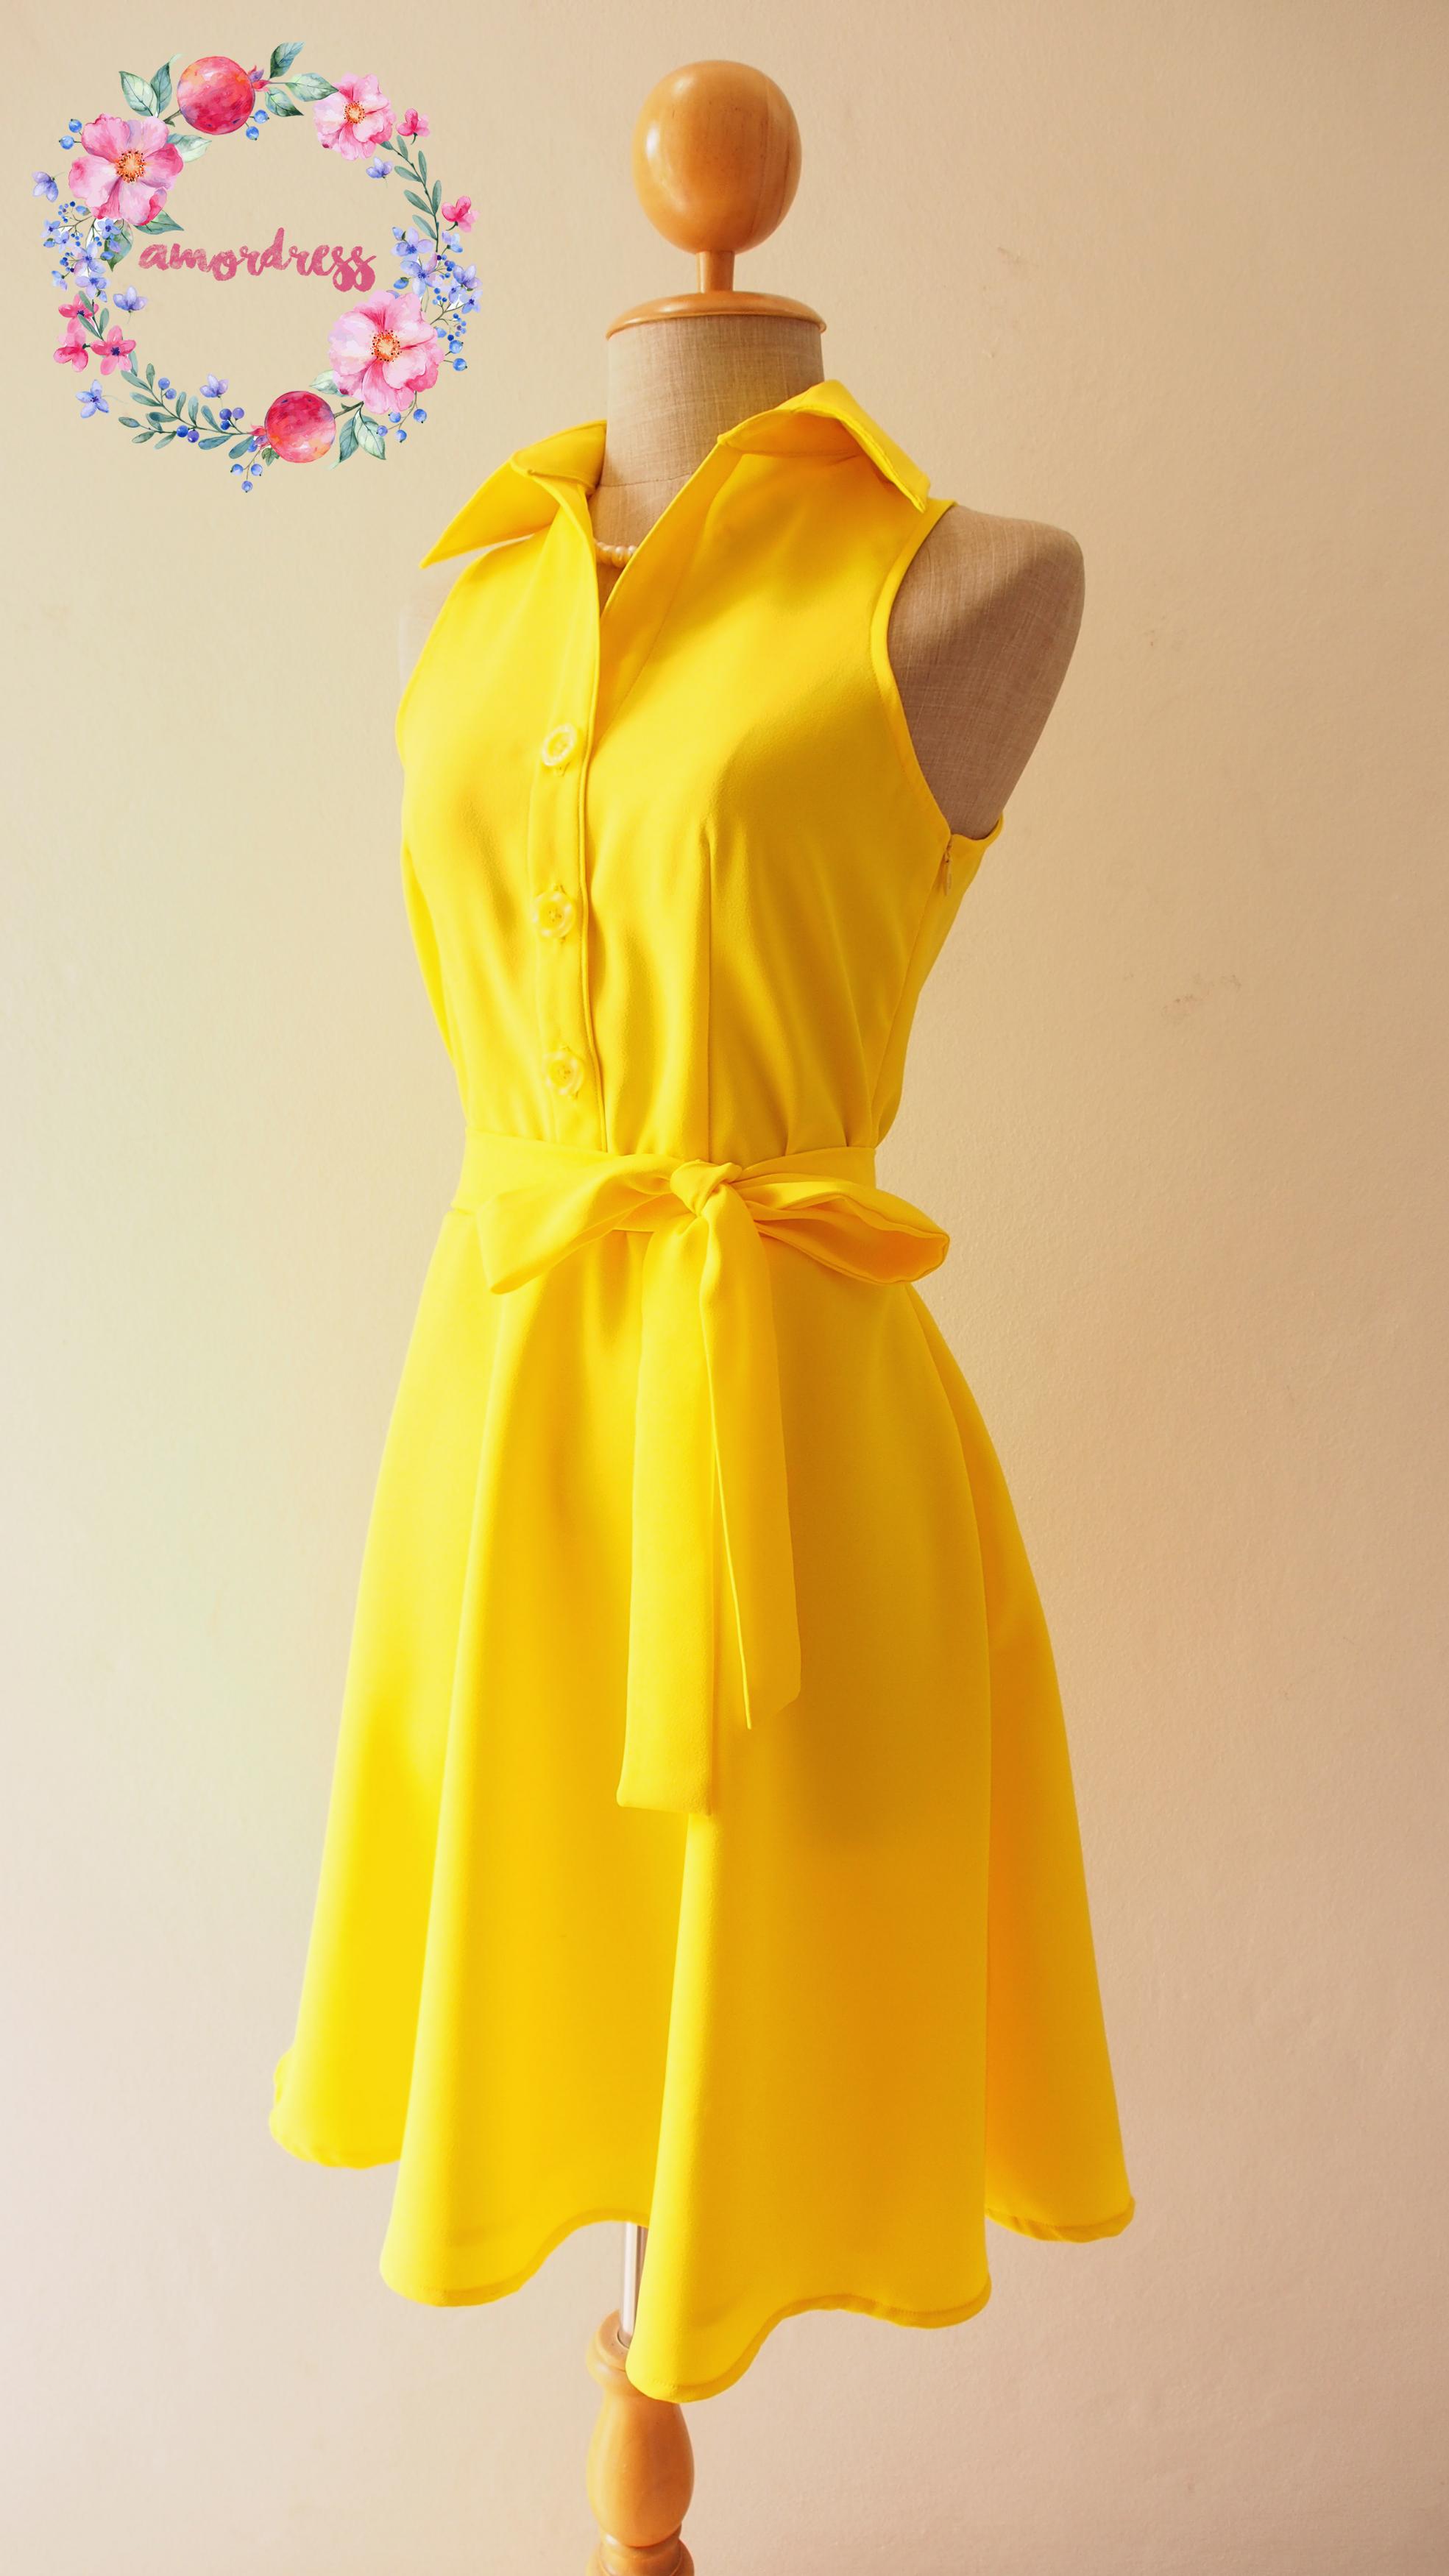 Lana Osette - Sundress Yellow/Vanilla